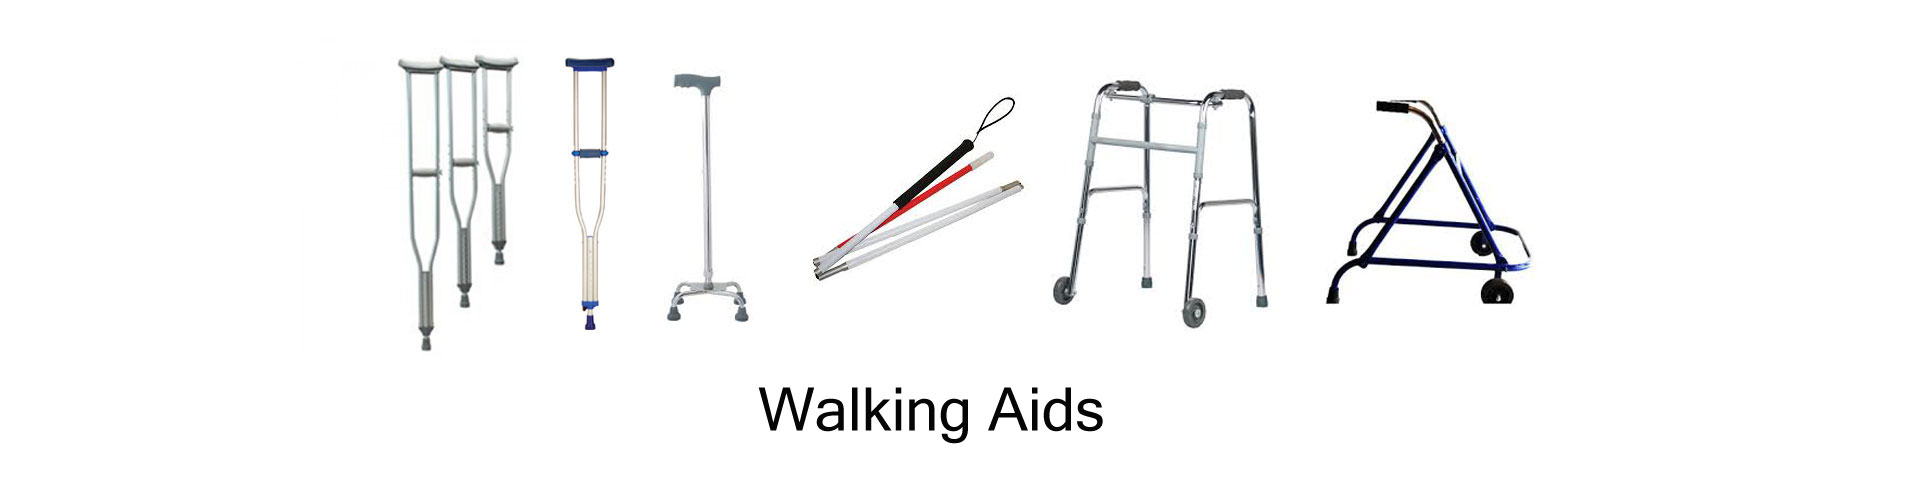 medical walker in india